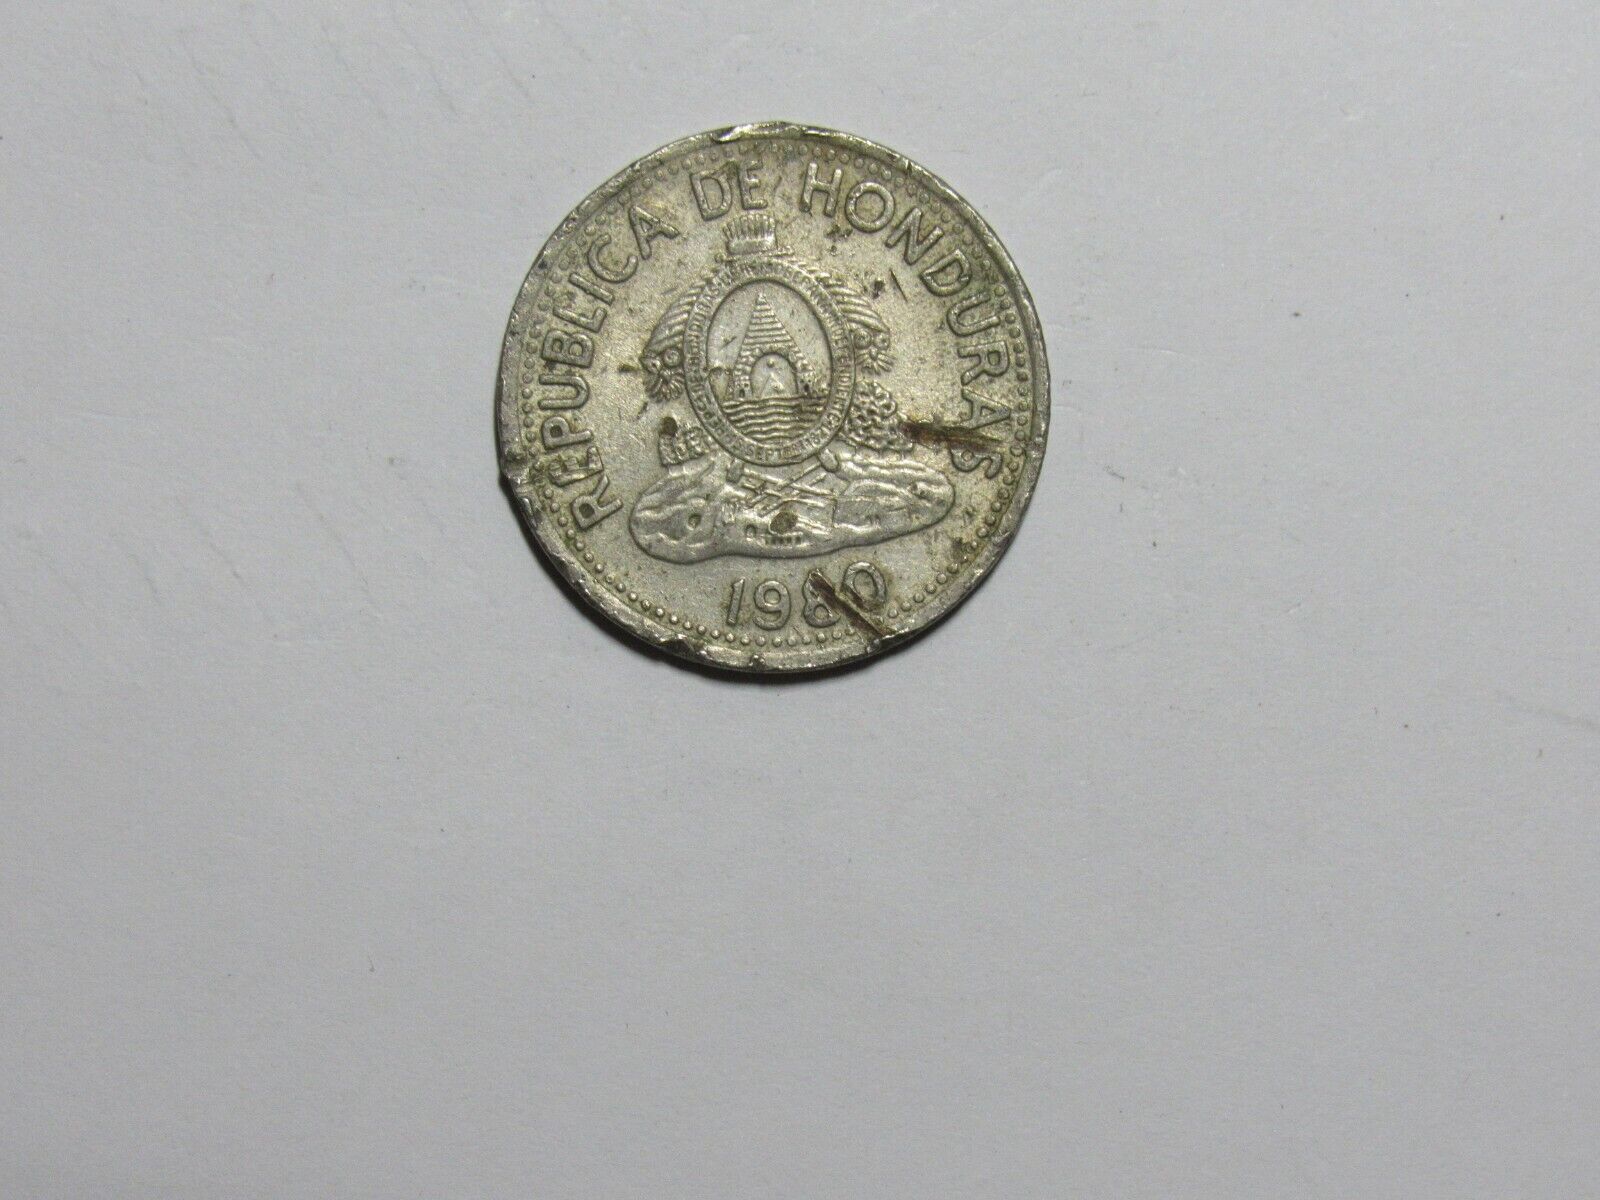 Honduras Coin - 1980 10 Centavos - Circulated, Cuts, Rim Damage